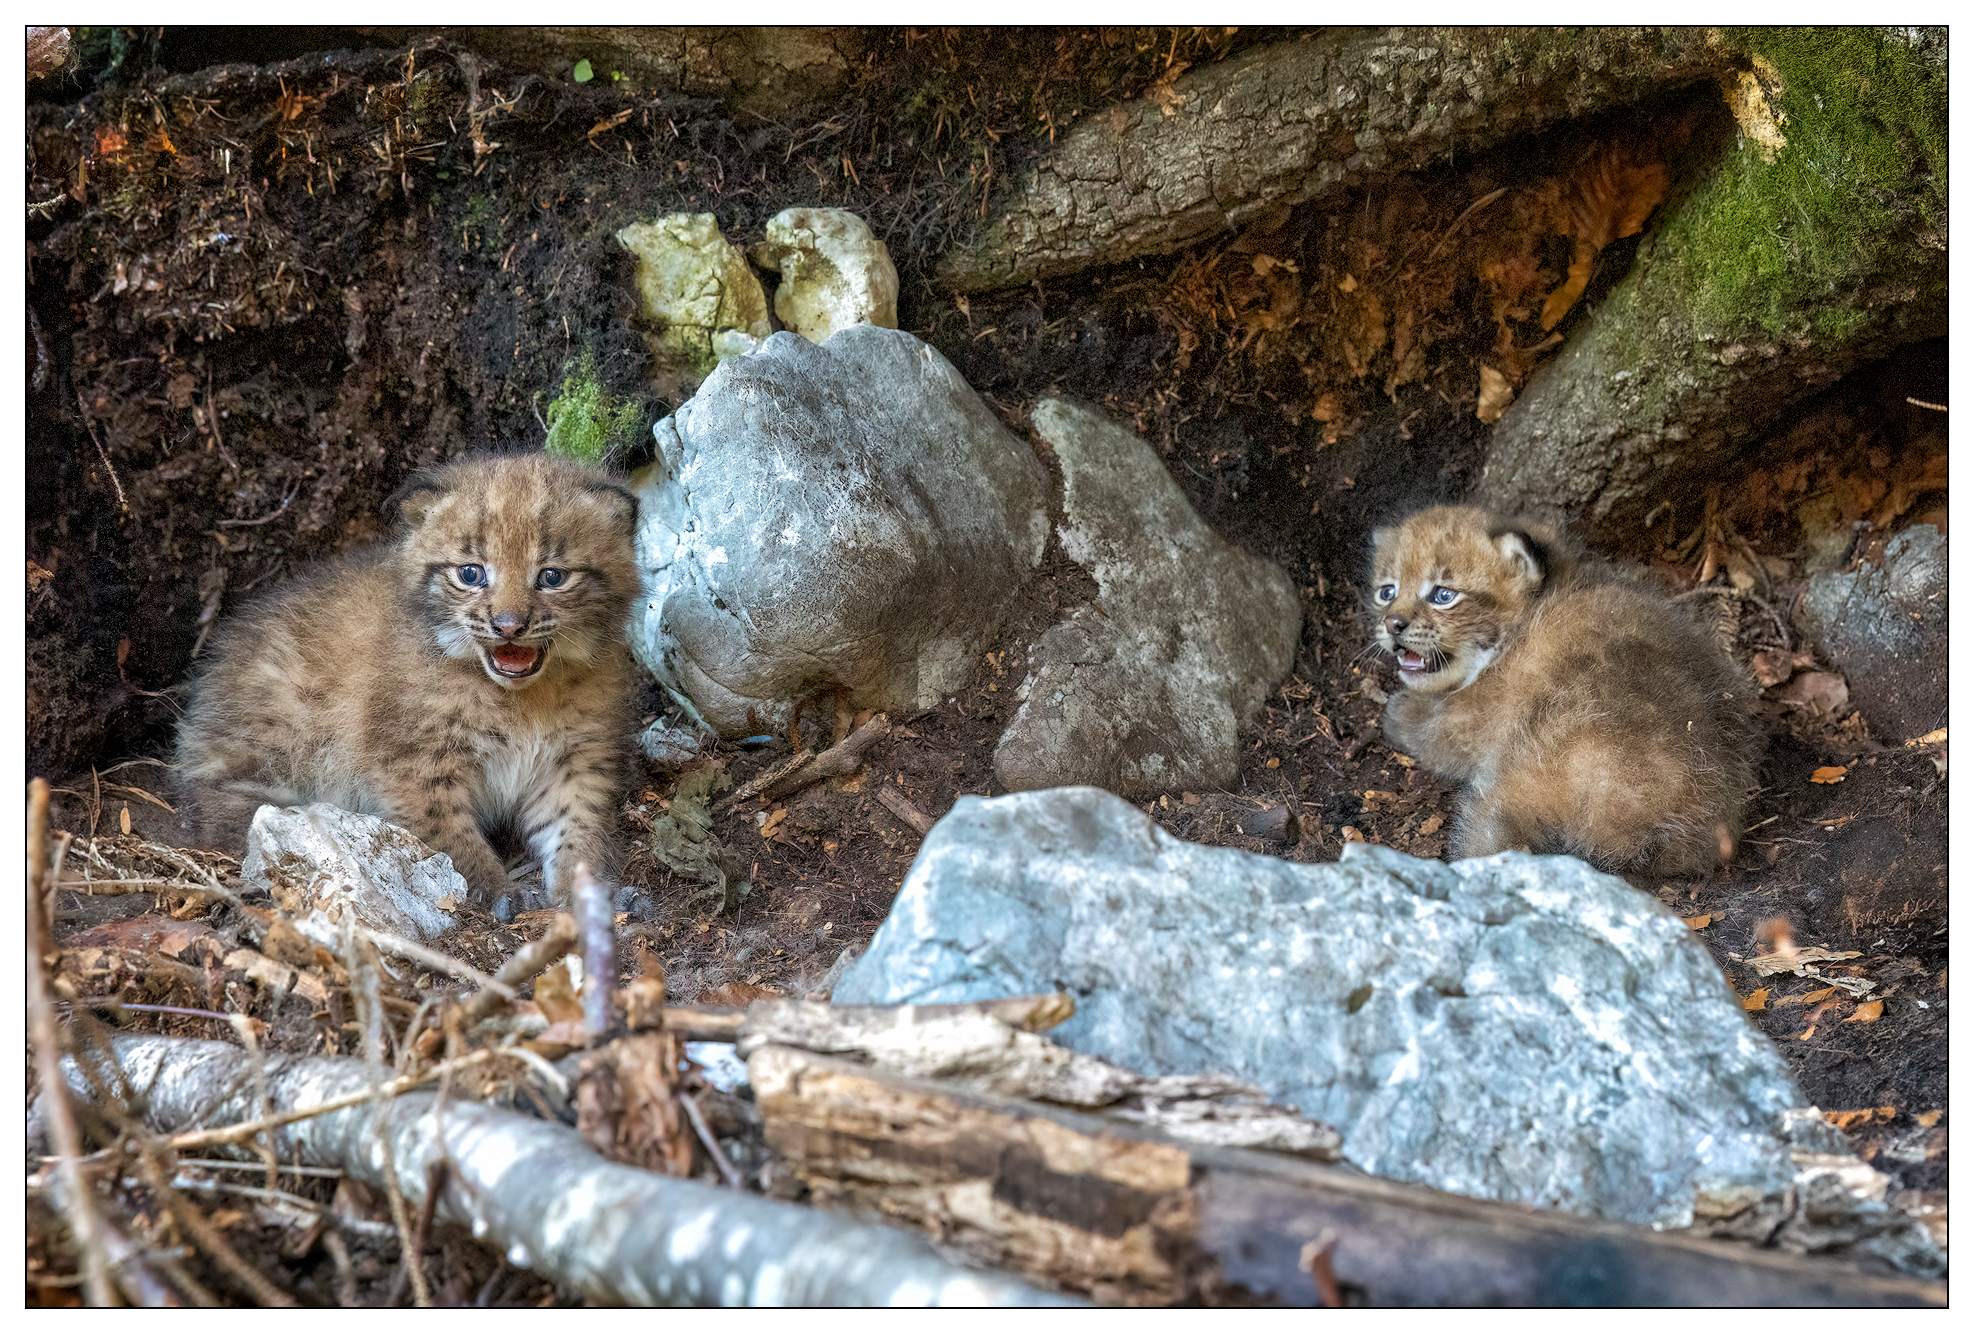 Auf dem Bild sind zwei flauschige kleine Luchsbabys zu sehen, die neben einem umgefallenen Baum im Wald sitzen. Sie schauen ein bisschen erschrocken in die Kamera, weil sie fotografiert werden.